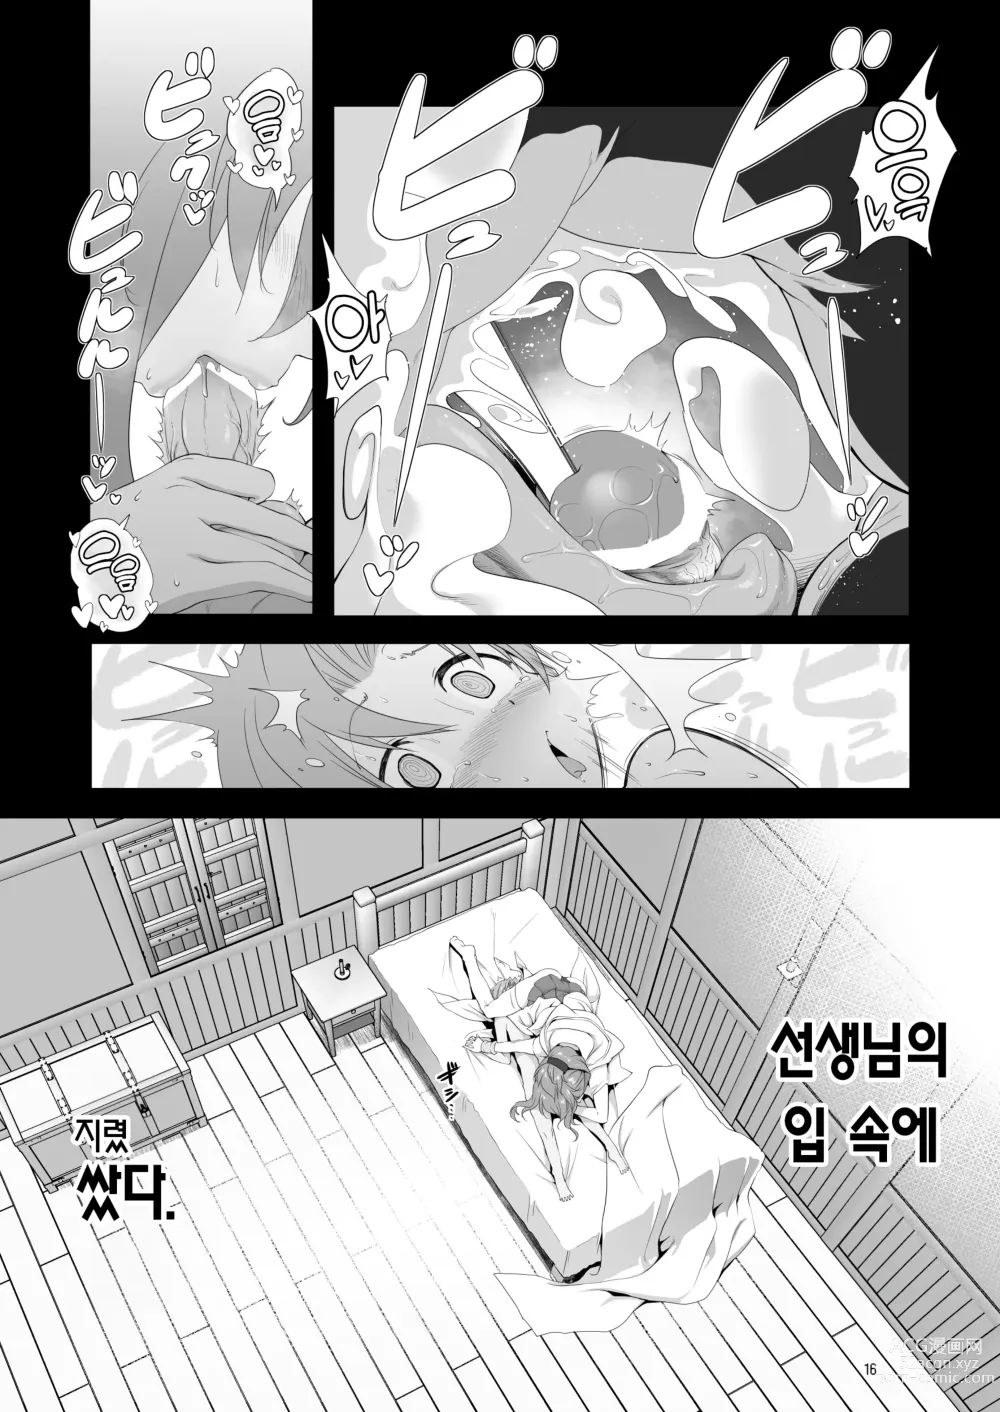 Page 16 of doujinshi 참으로 유감이지만 모험의 서 9는 사라져버렸습니다.